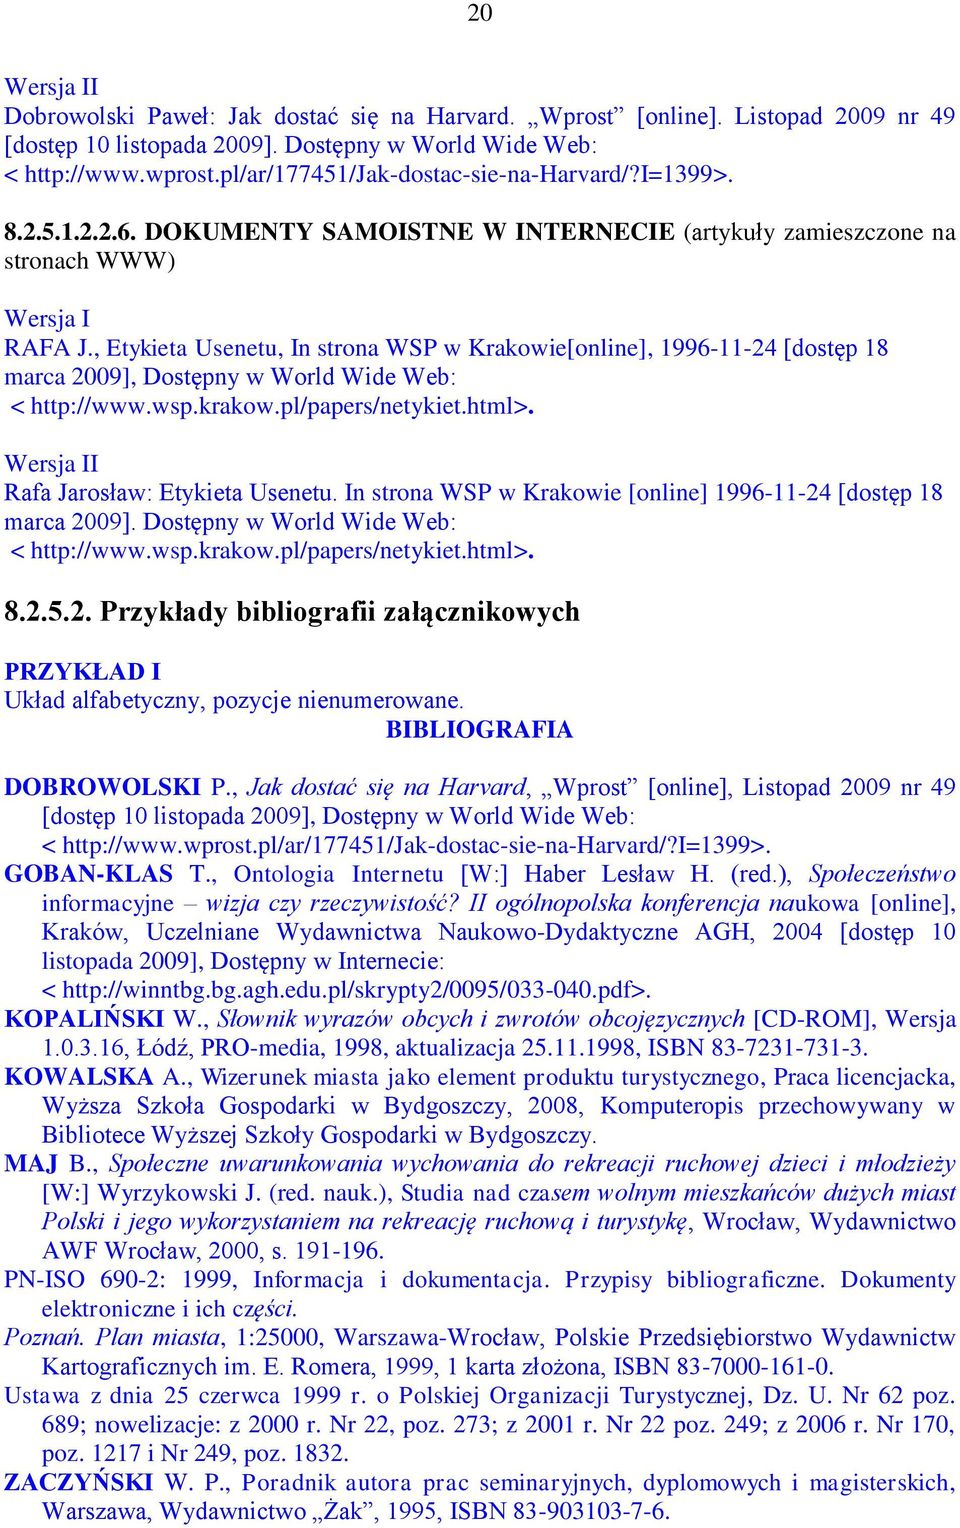 , Etykieta Usenetu, In strona WSP w Krakowie[online], 1996-11-24 [dostęp 18 marca 2009], Dostępny w World Wide Web: < http://www.wsp.krakow.pl/papers/netykiet.html>. Rafa Jarosław: Etykieta Usenetu.